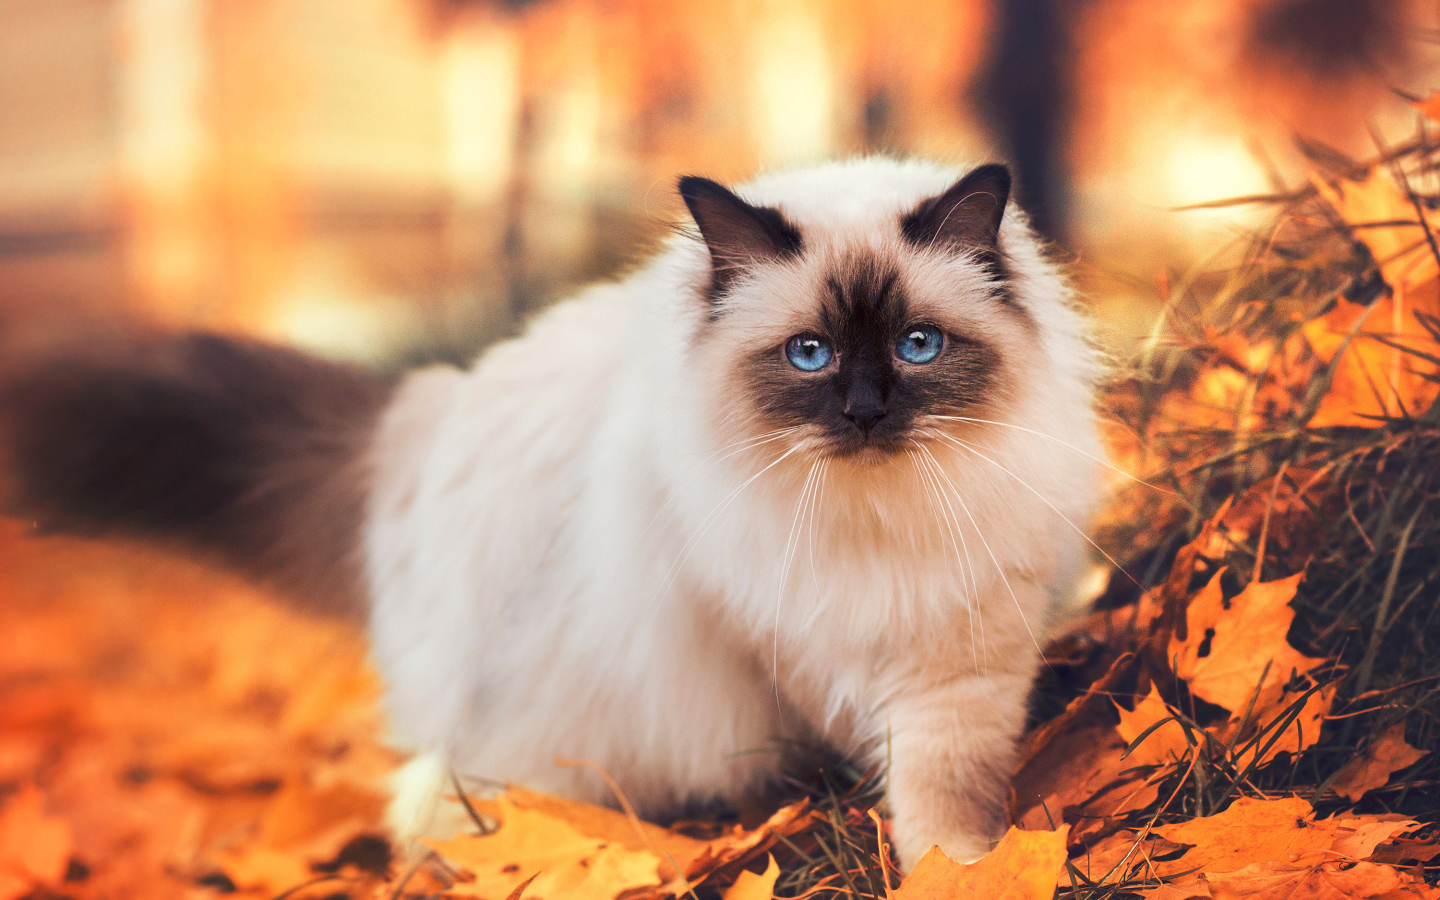 Породистый сиамский кот с голубыми глазами гуляет по желтой листве